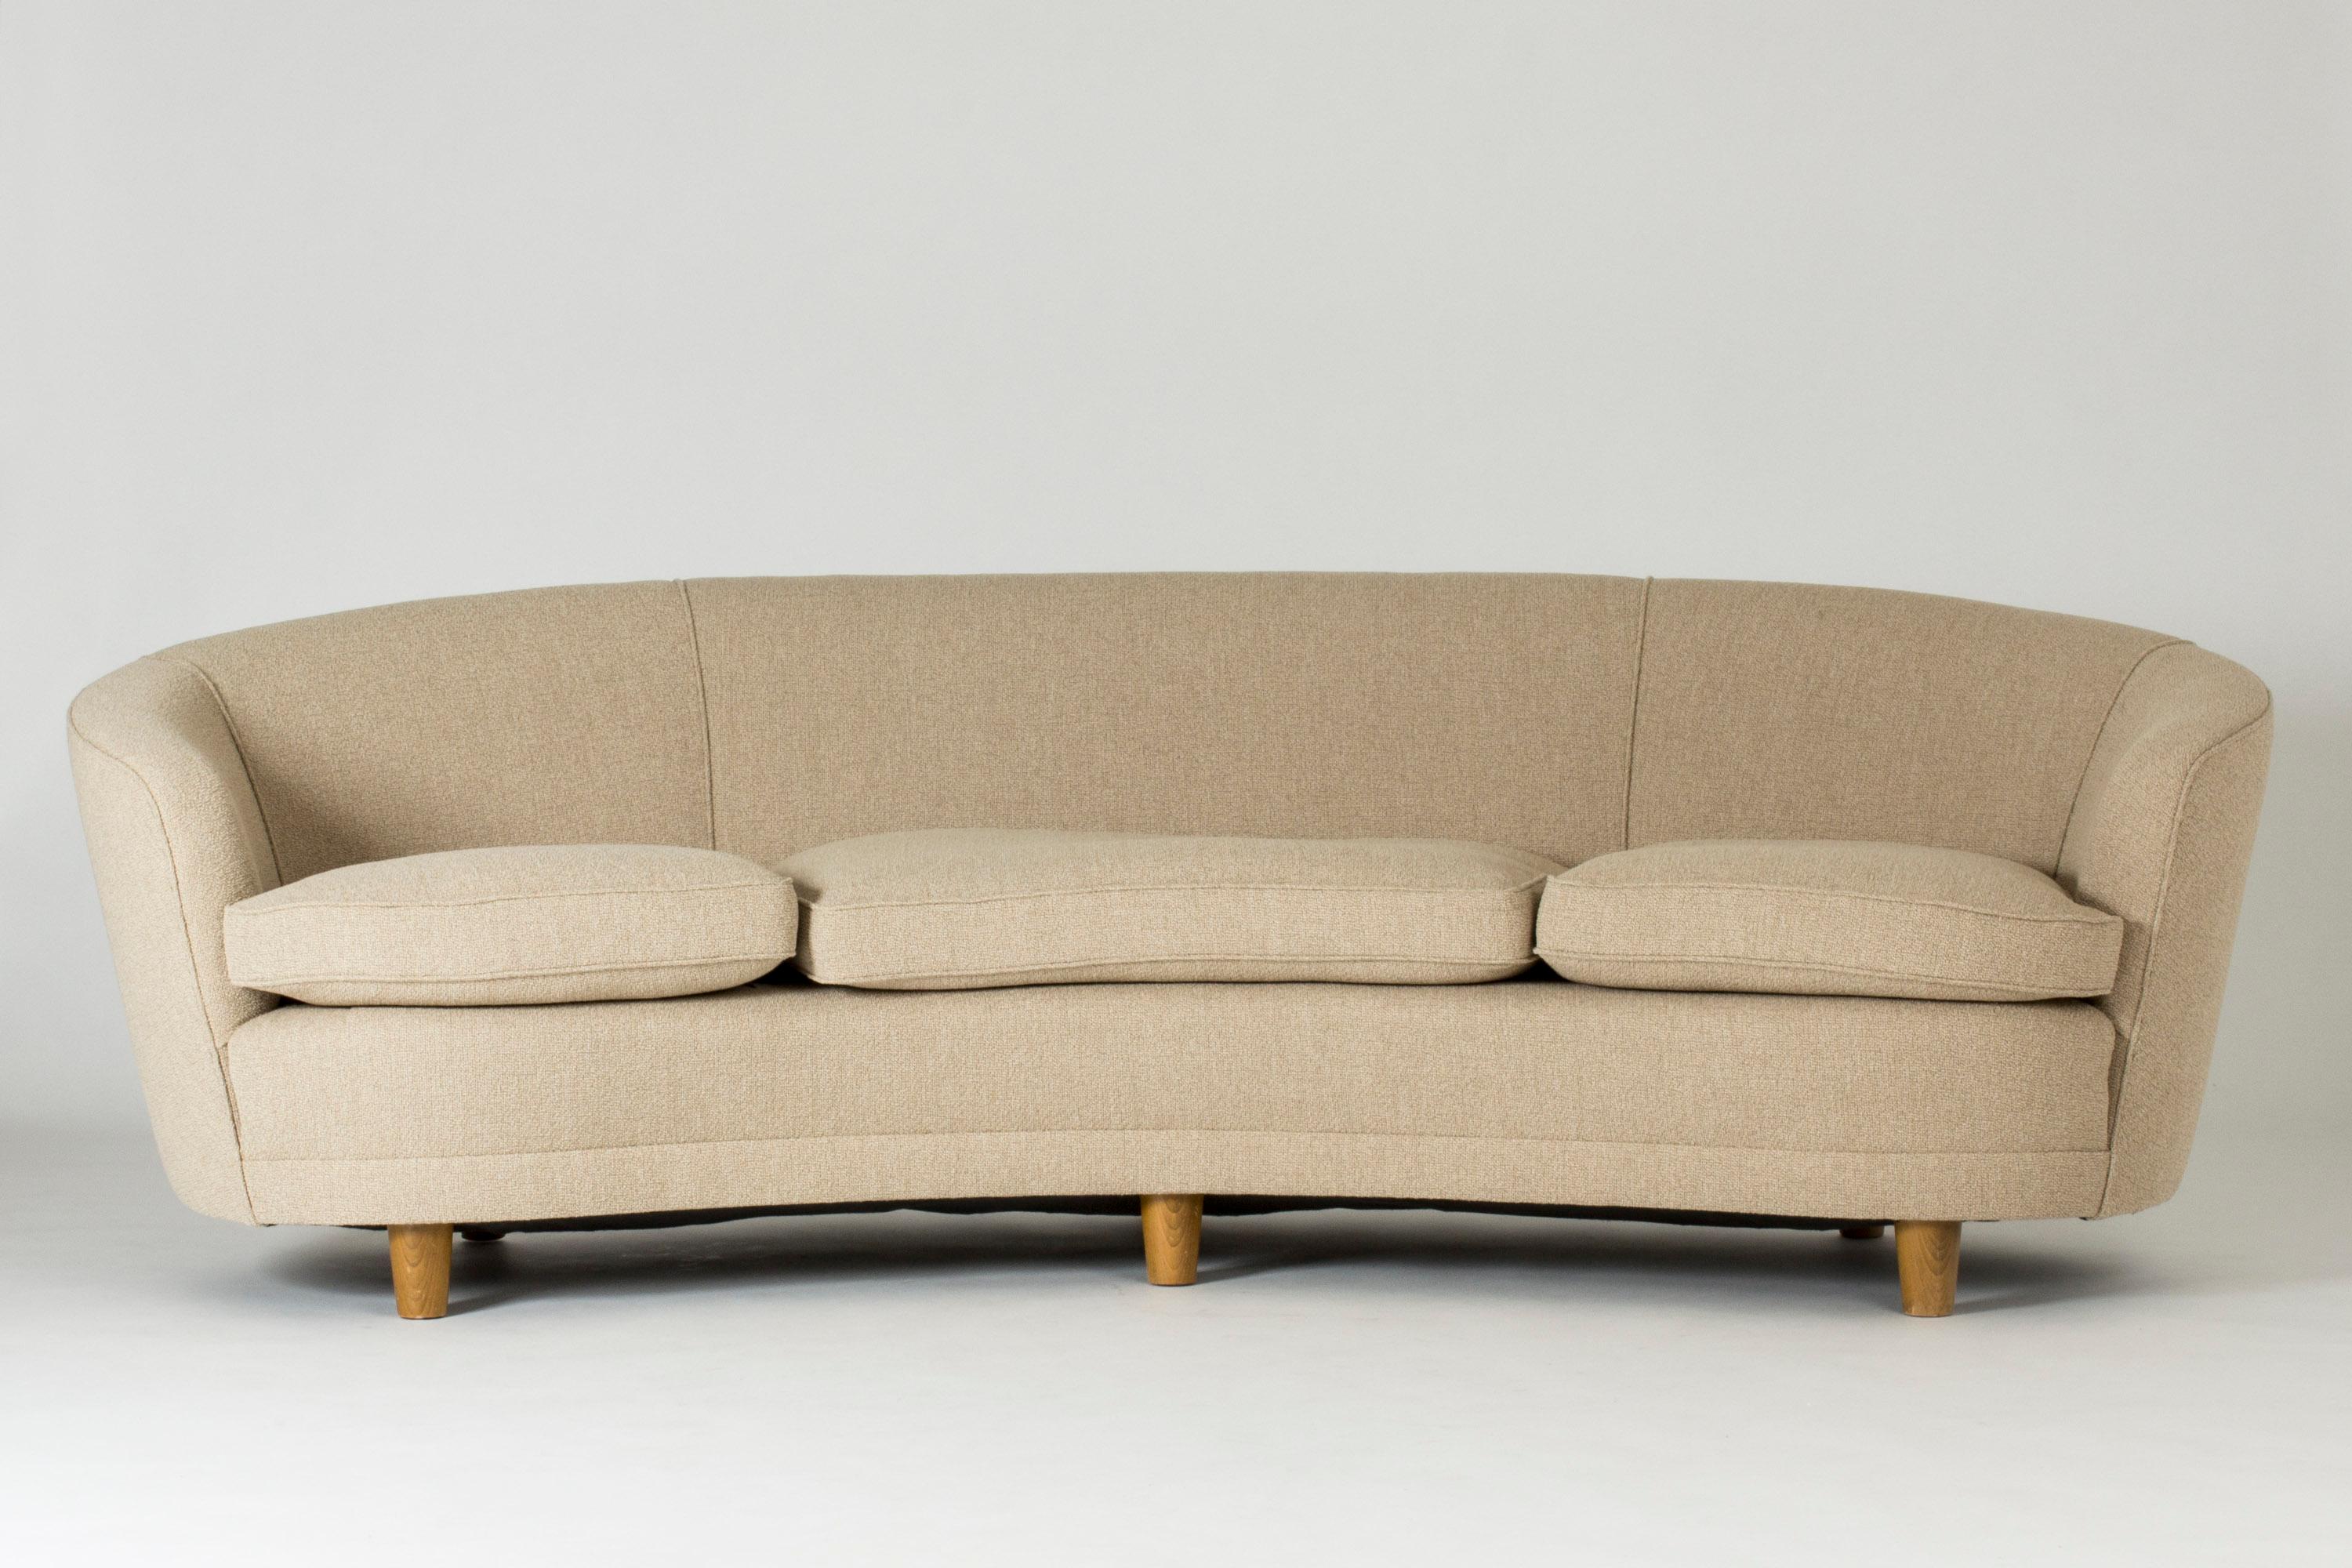 Großes, geschwungenes Sofa aus den 1940er Jahren. Runde, klobige Holzbeine, Polsterung aus Bouclé-Stoff. Sehr elegantes Design, hohe Qualität und Komfort.